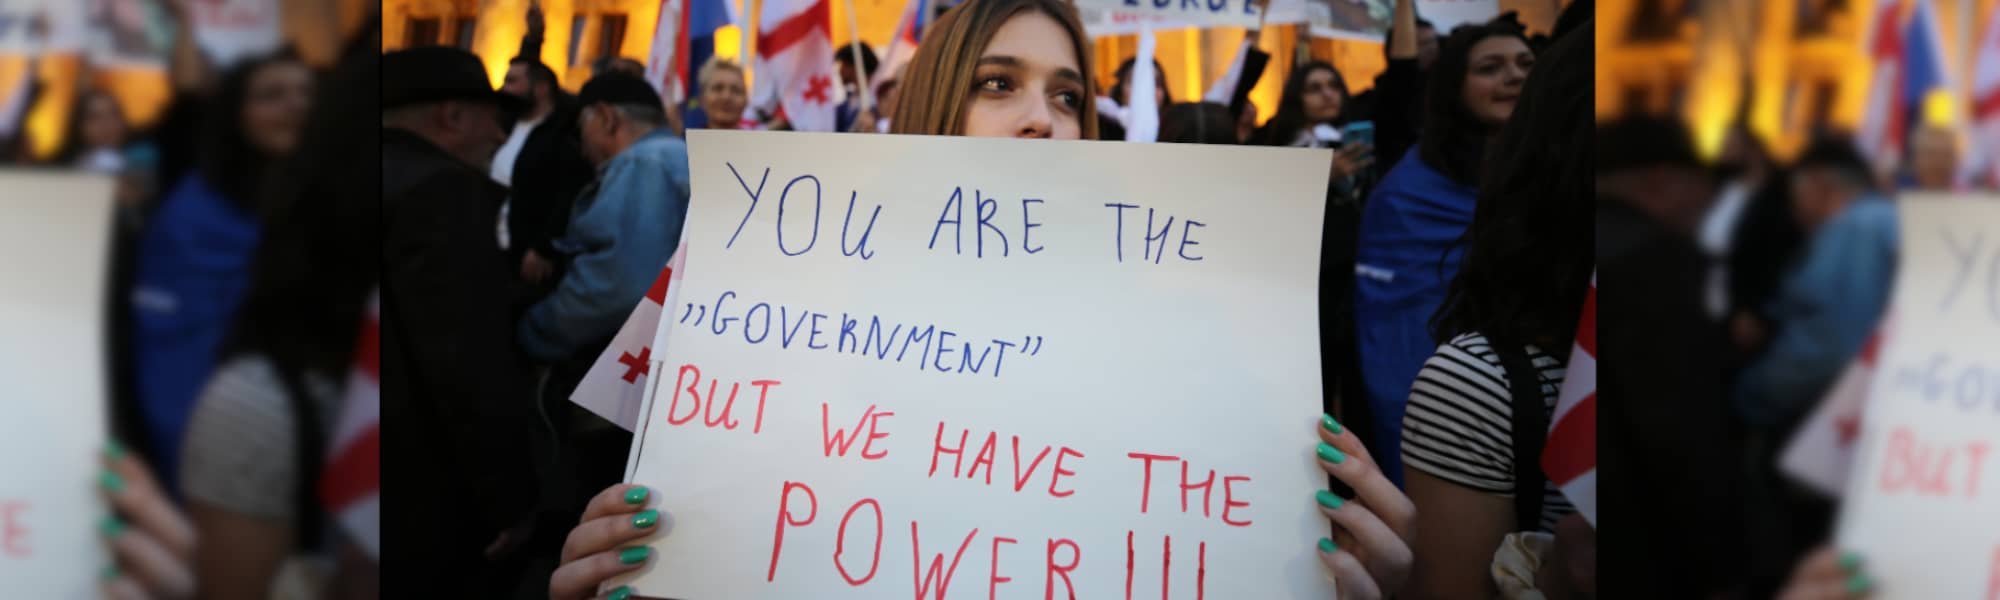 Una chica joven sostiene un cartel que pone "Vosotros sois el gobierno, pero nosotros tenemos el poder"